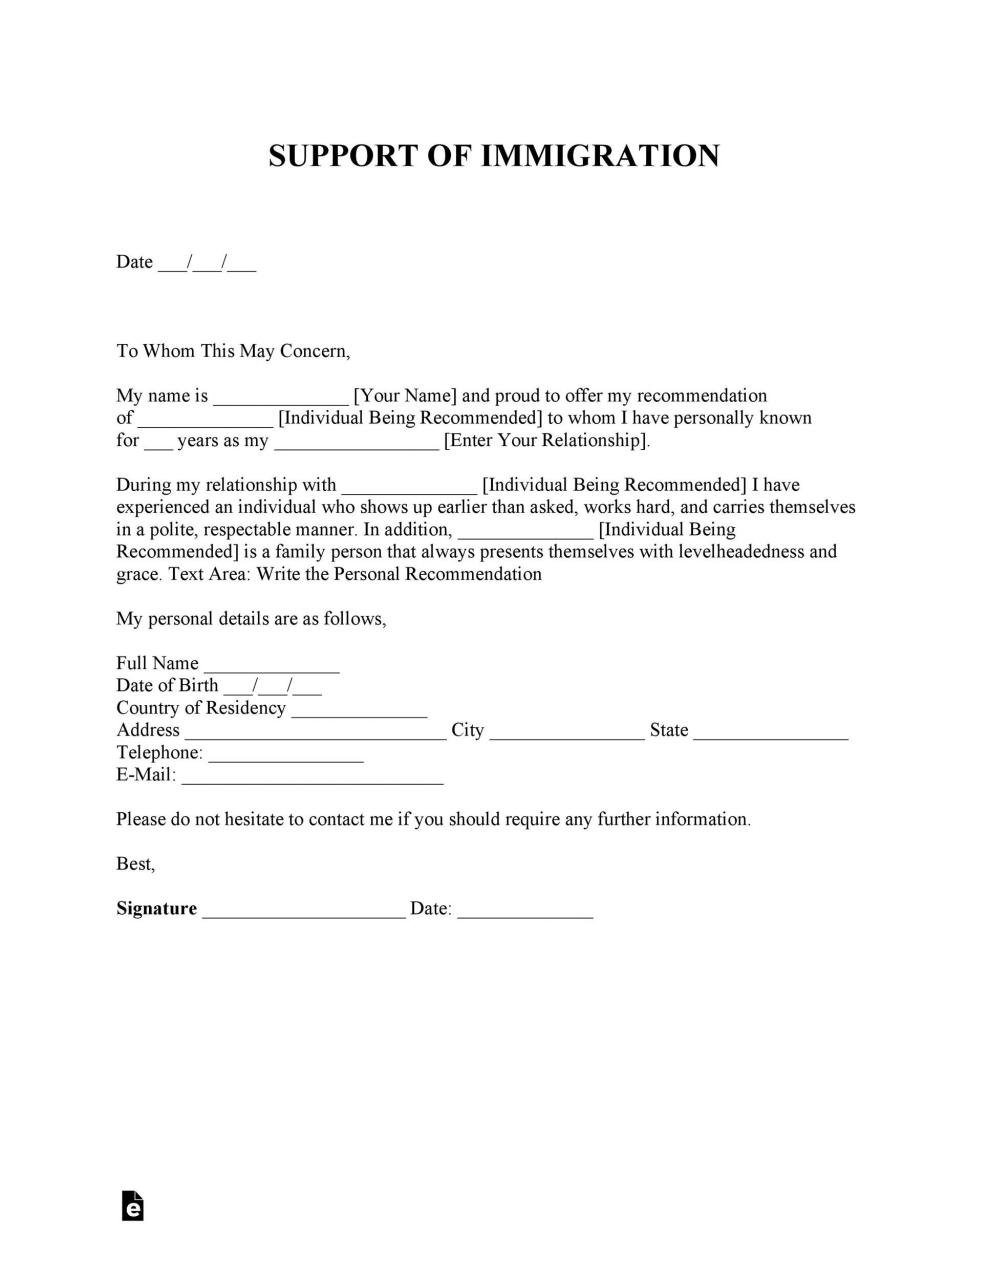 Carta de Inmigración Gratis 02